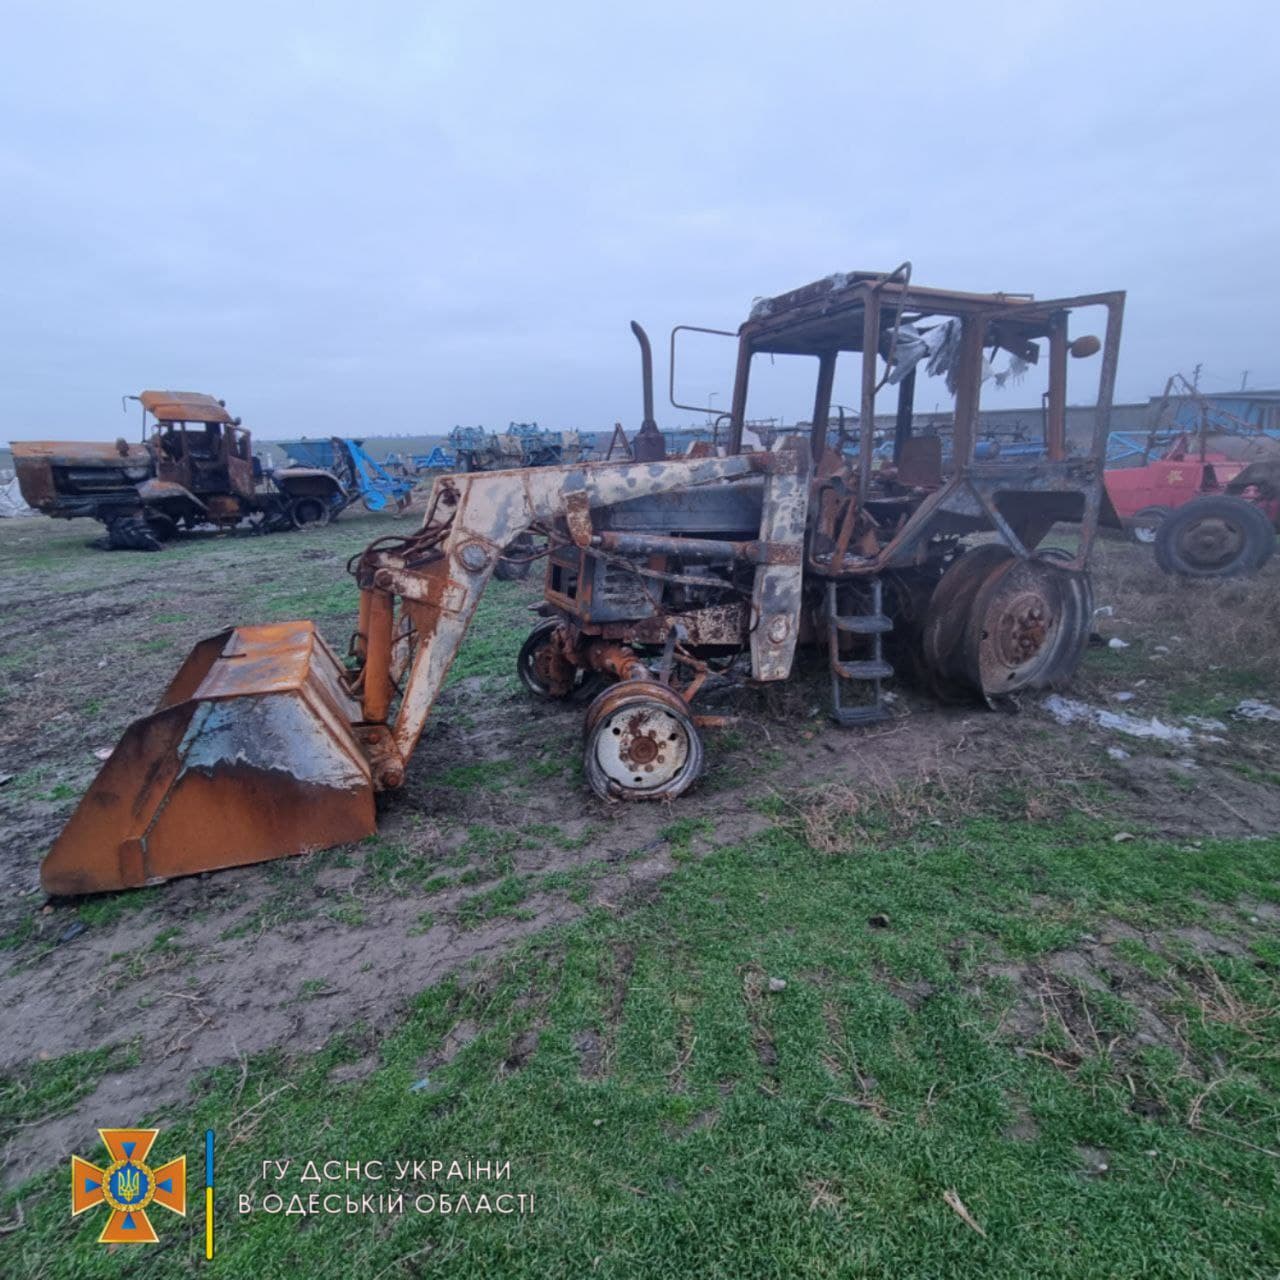 В Измаильском районе сгорели еще четыре трактора (обновлено)